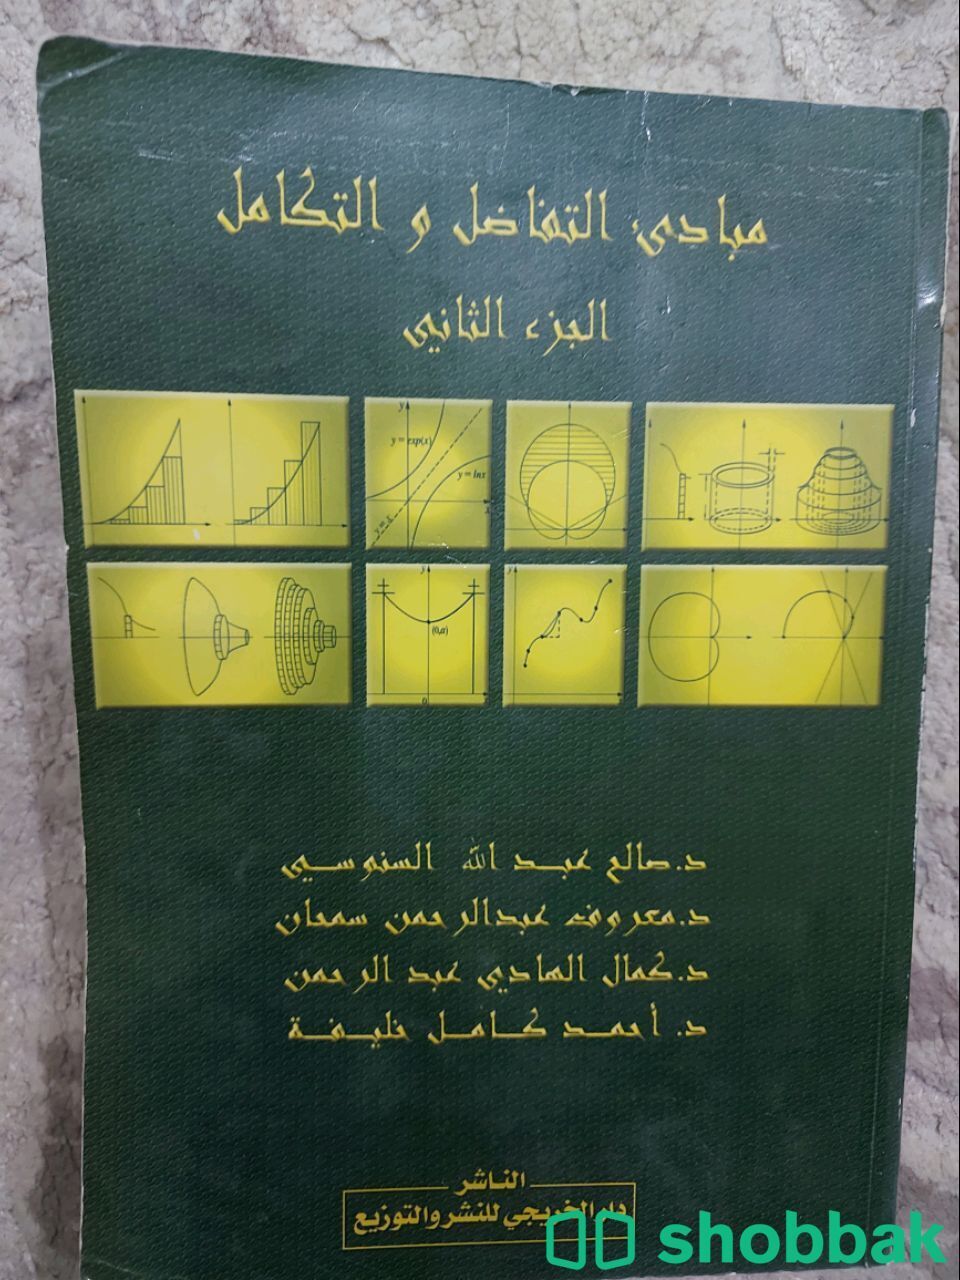 مجموعة كتب قديمة اغلبها لجامعة الملك سعود Shobbak Saudi Arabia